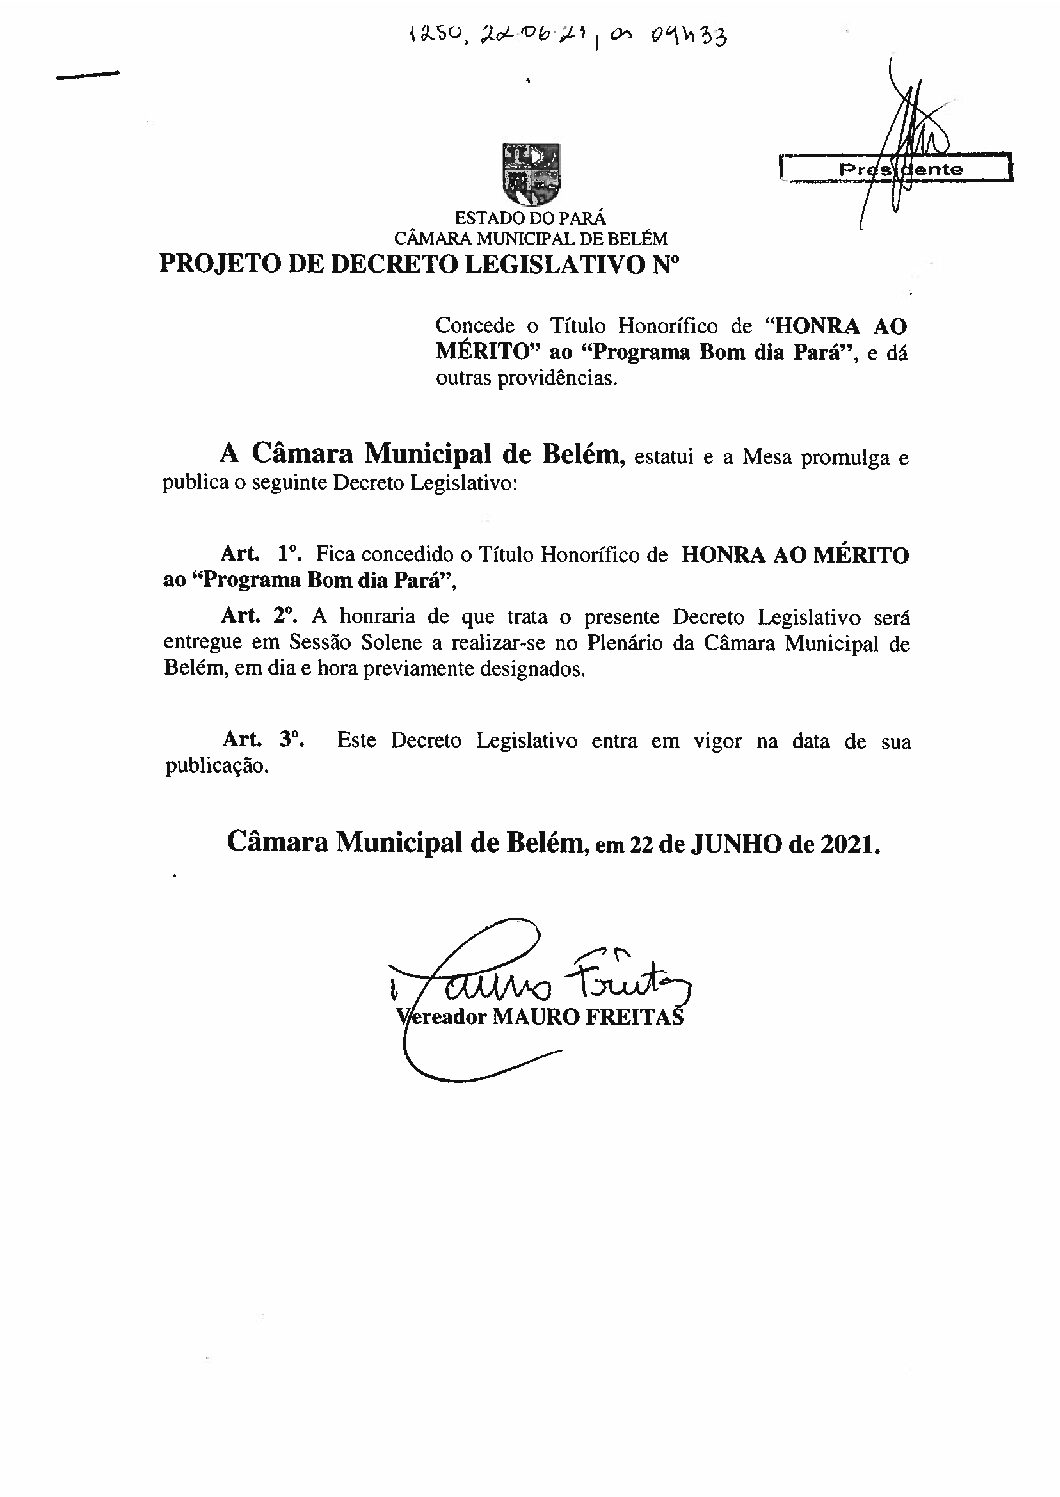 Proc. 1250-2021 Mauro - Câmara Municipal de Belém | Gestão 2021-2022